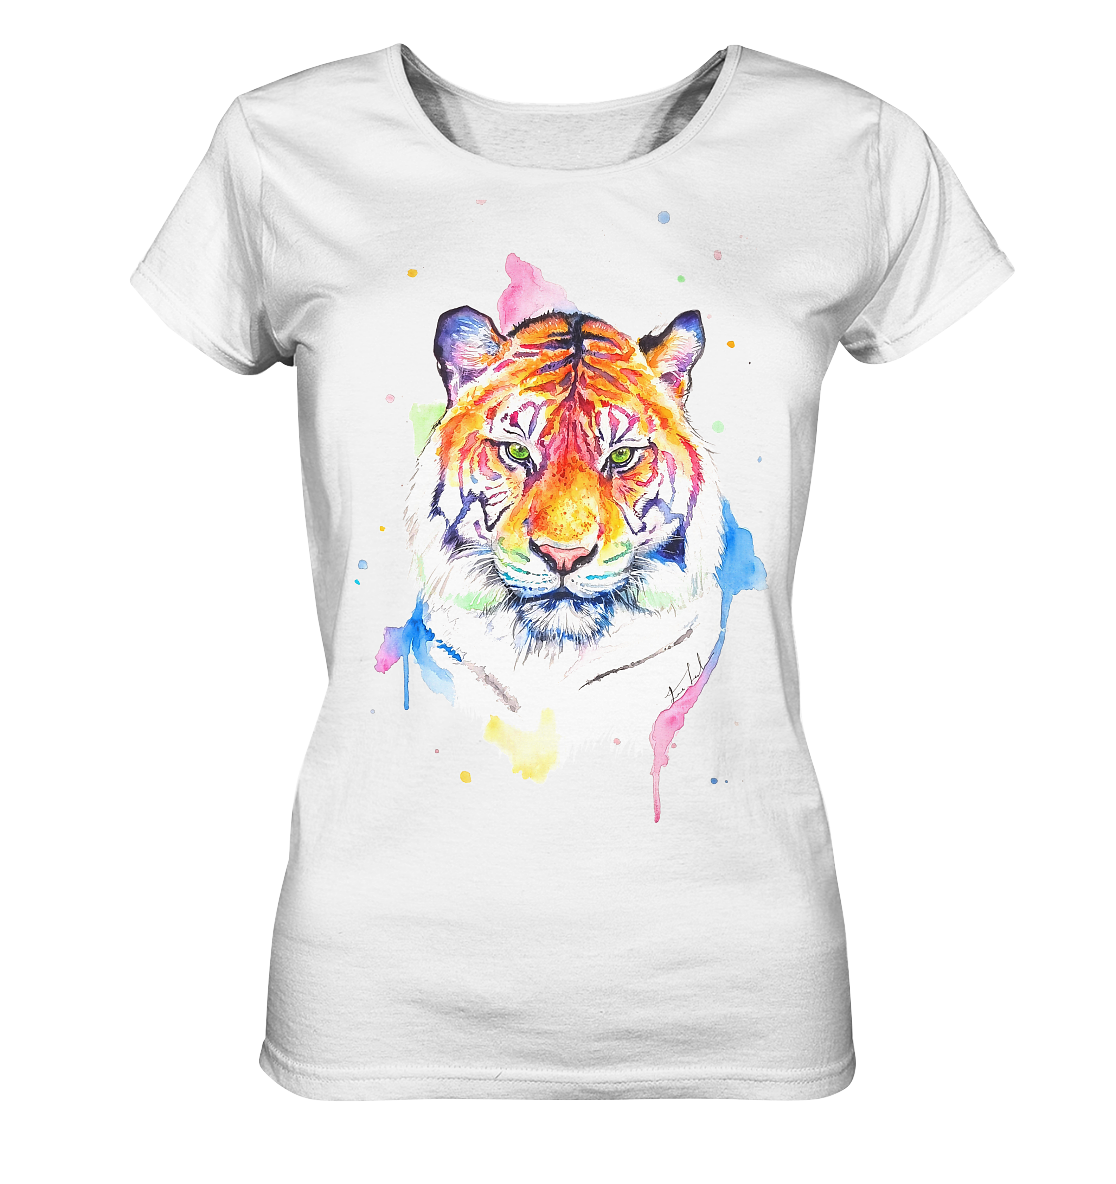 Bunter Tiger - Ladies Organic Basic Shirt